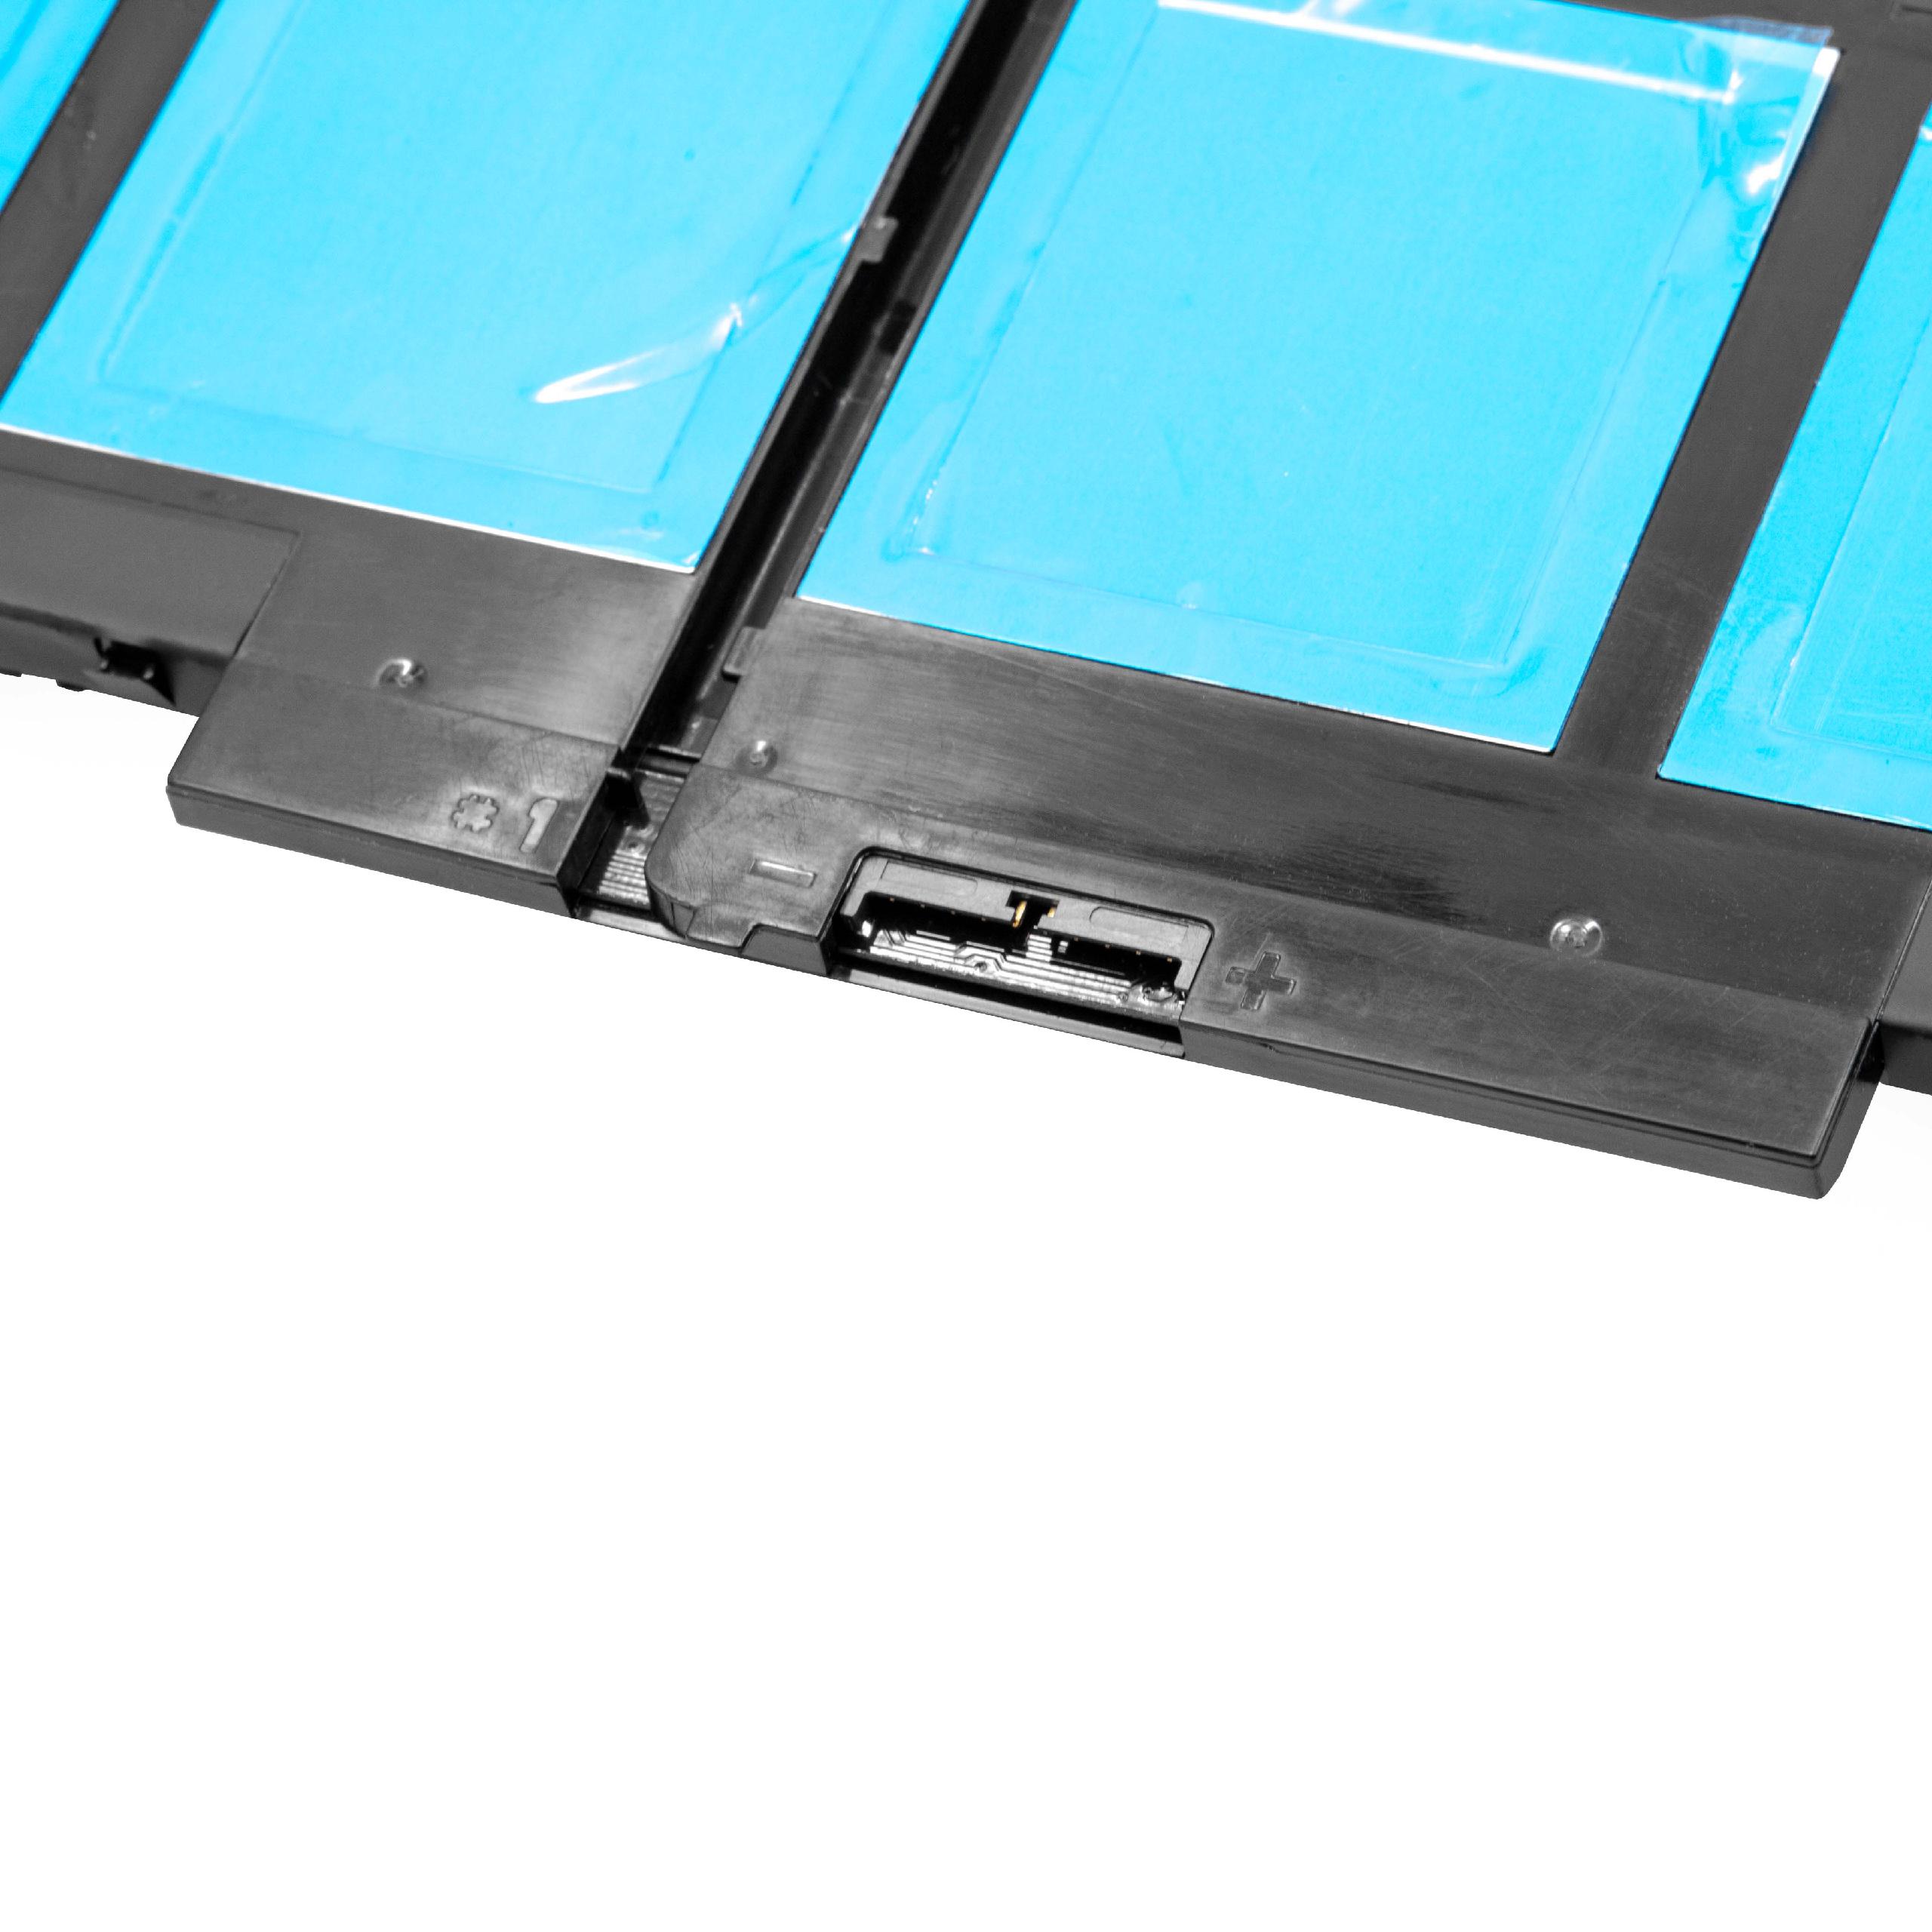 Batterie remplace Dell 0WYJC2, 0G5M10, 079VRK, 1KY05 pour ordinateur portable - 6800mAh 7,4V Li-polymère